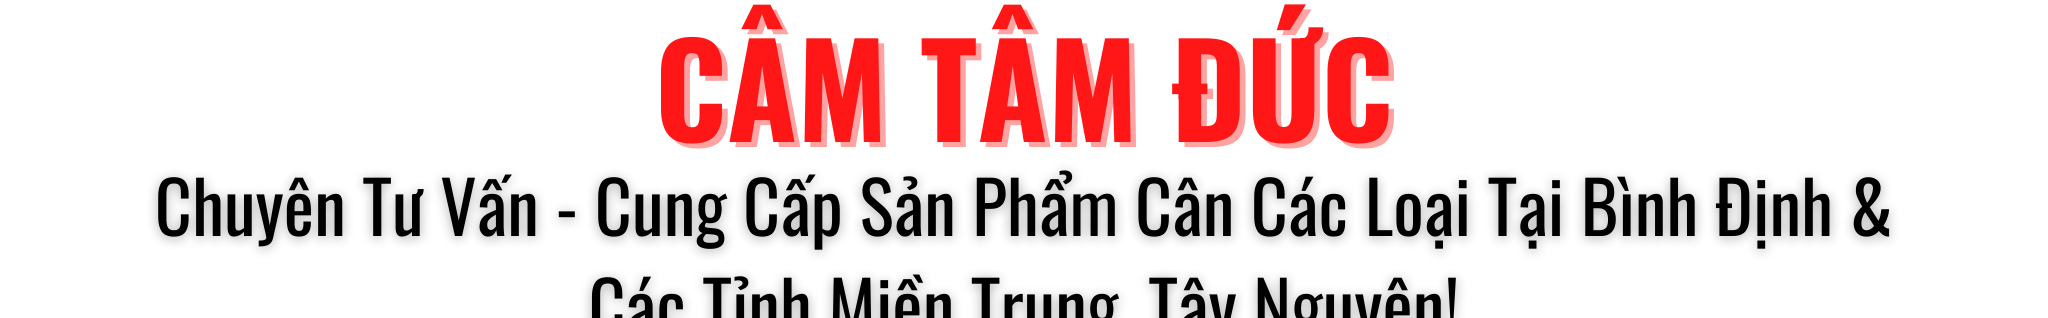 Баннер профиля Cân Tâm Đức